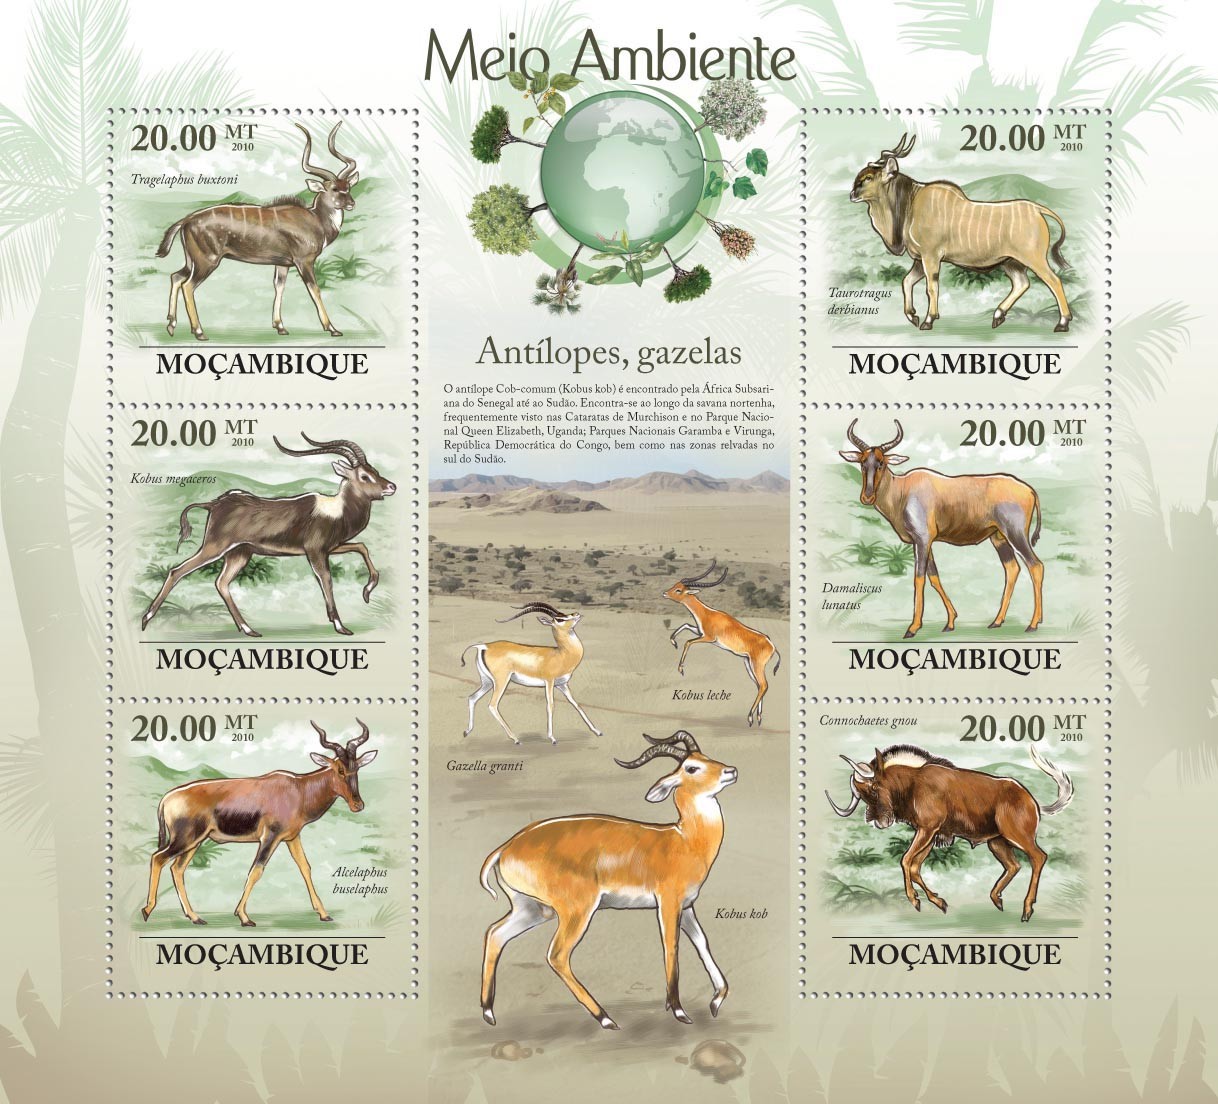 Antelopes & Gazelles ( Tragelaphus buxtoni, Kobus megaceros, Alcelaphus buselaphus, etc..) - Issue of Mozambique postage Stamps